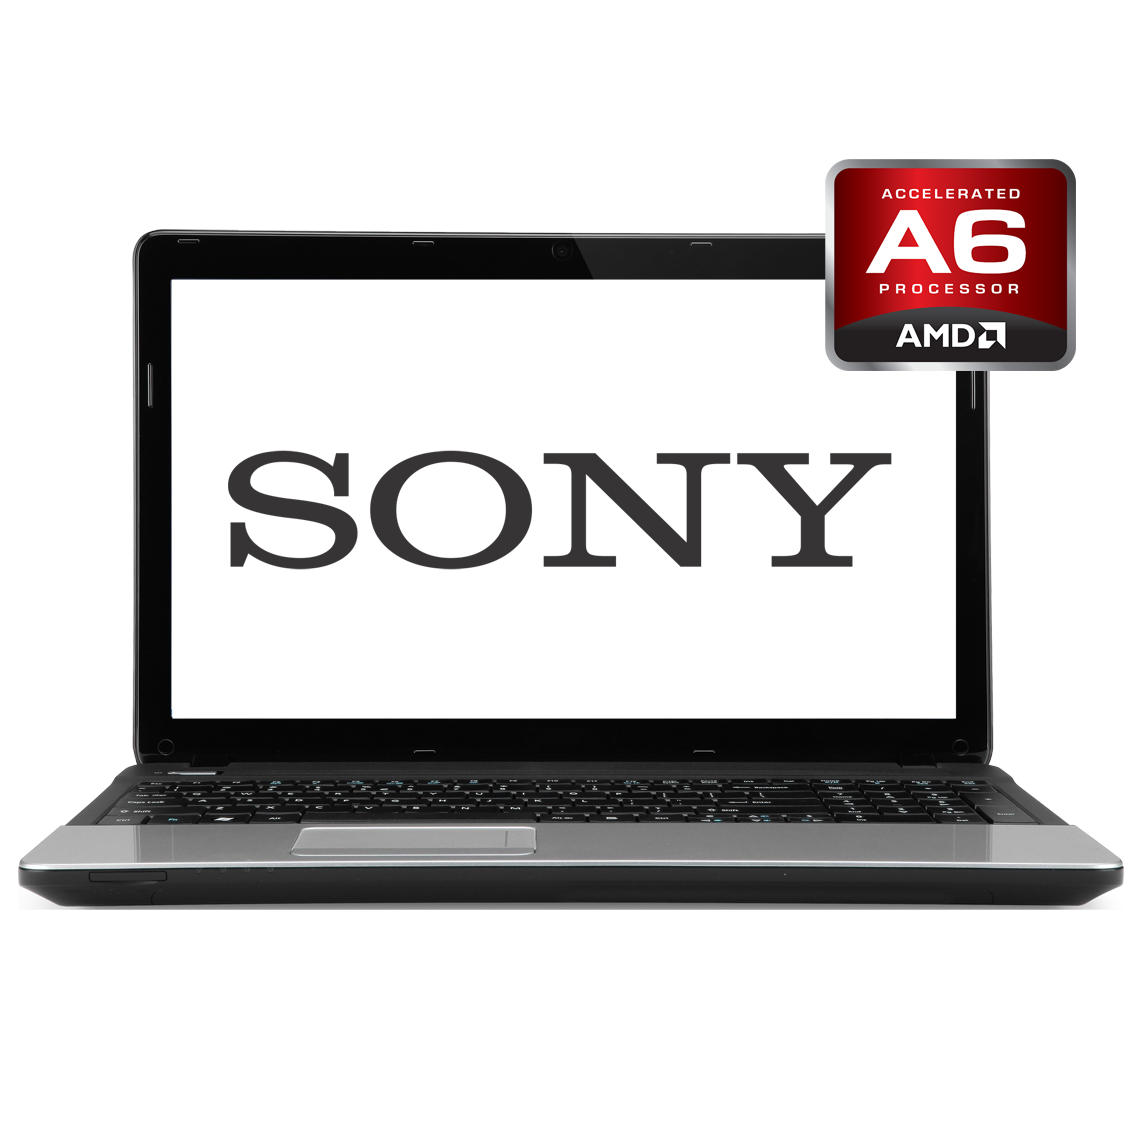 Sony - 13 inch AMD A6